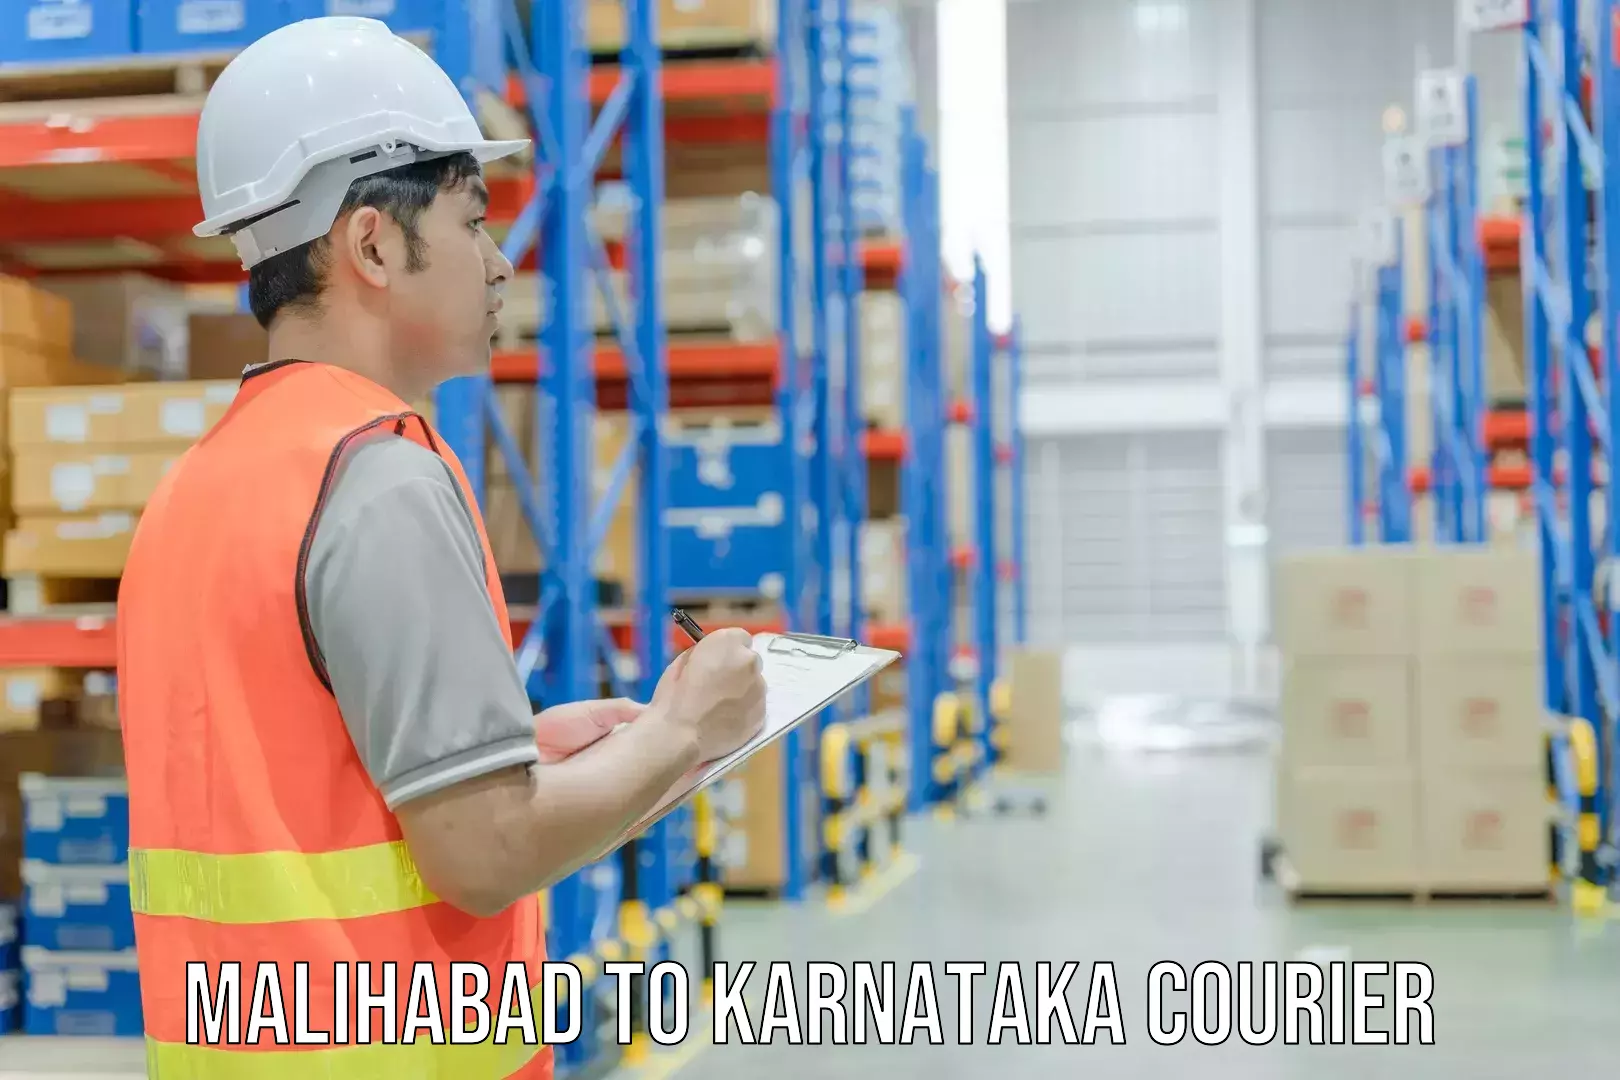 Efficient shipping operations Malihabad to Karnataka